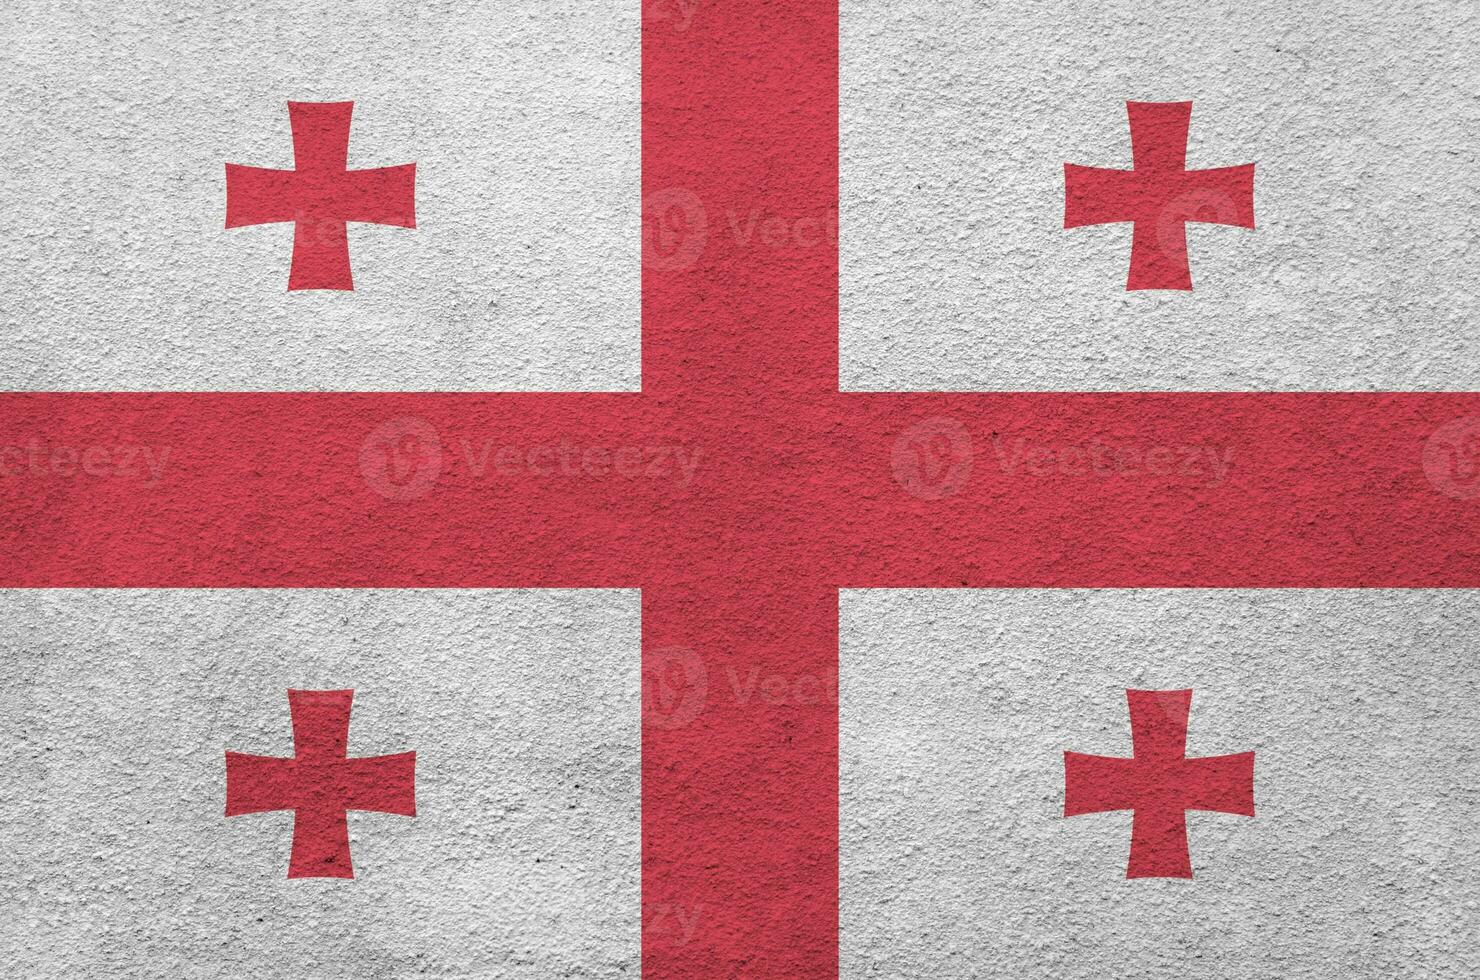 georgien flagga avbildad i ljus måla färger på gammal lättnad putsning vägg. texturerad baner på grov bakgrund foto